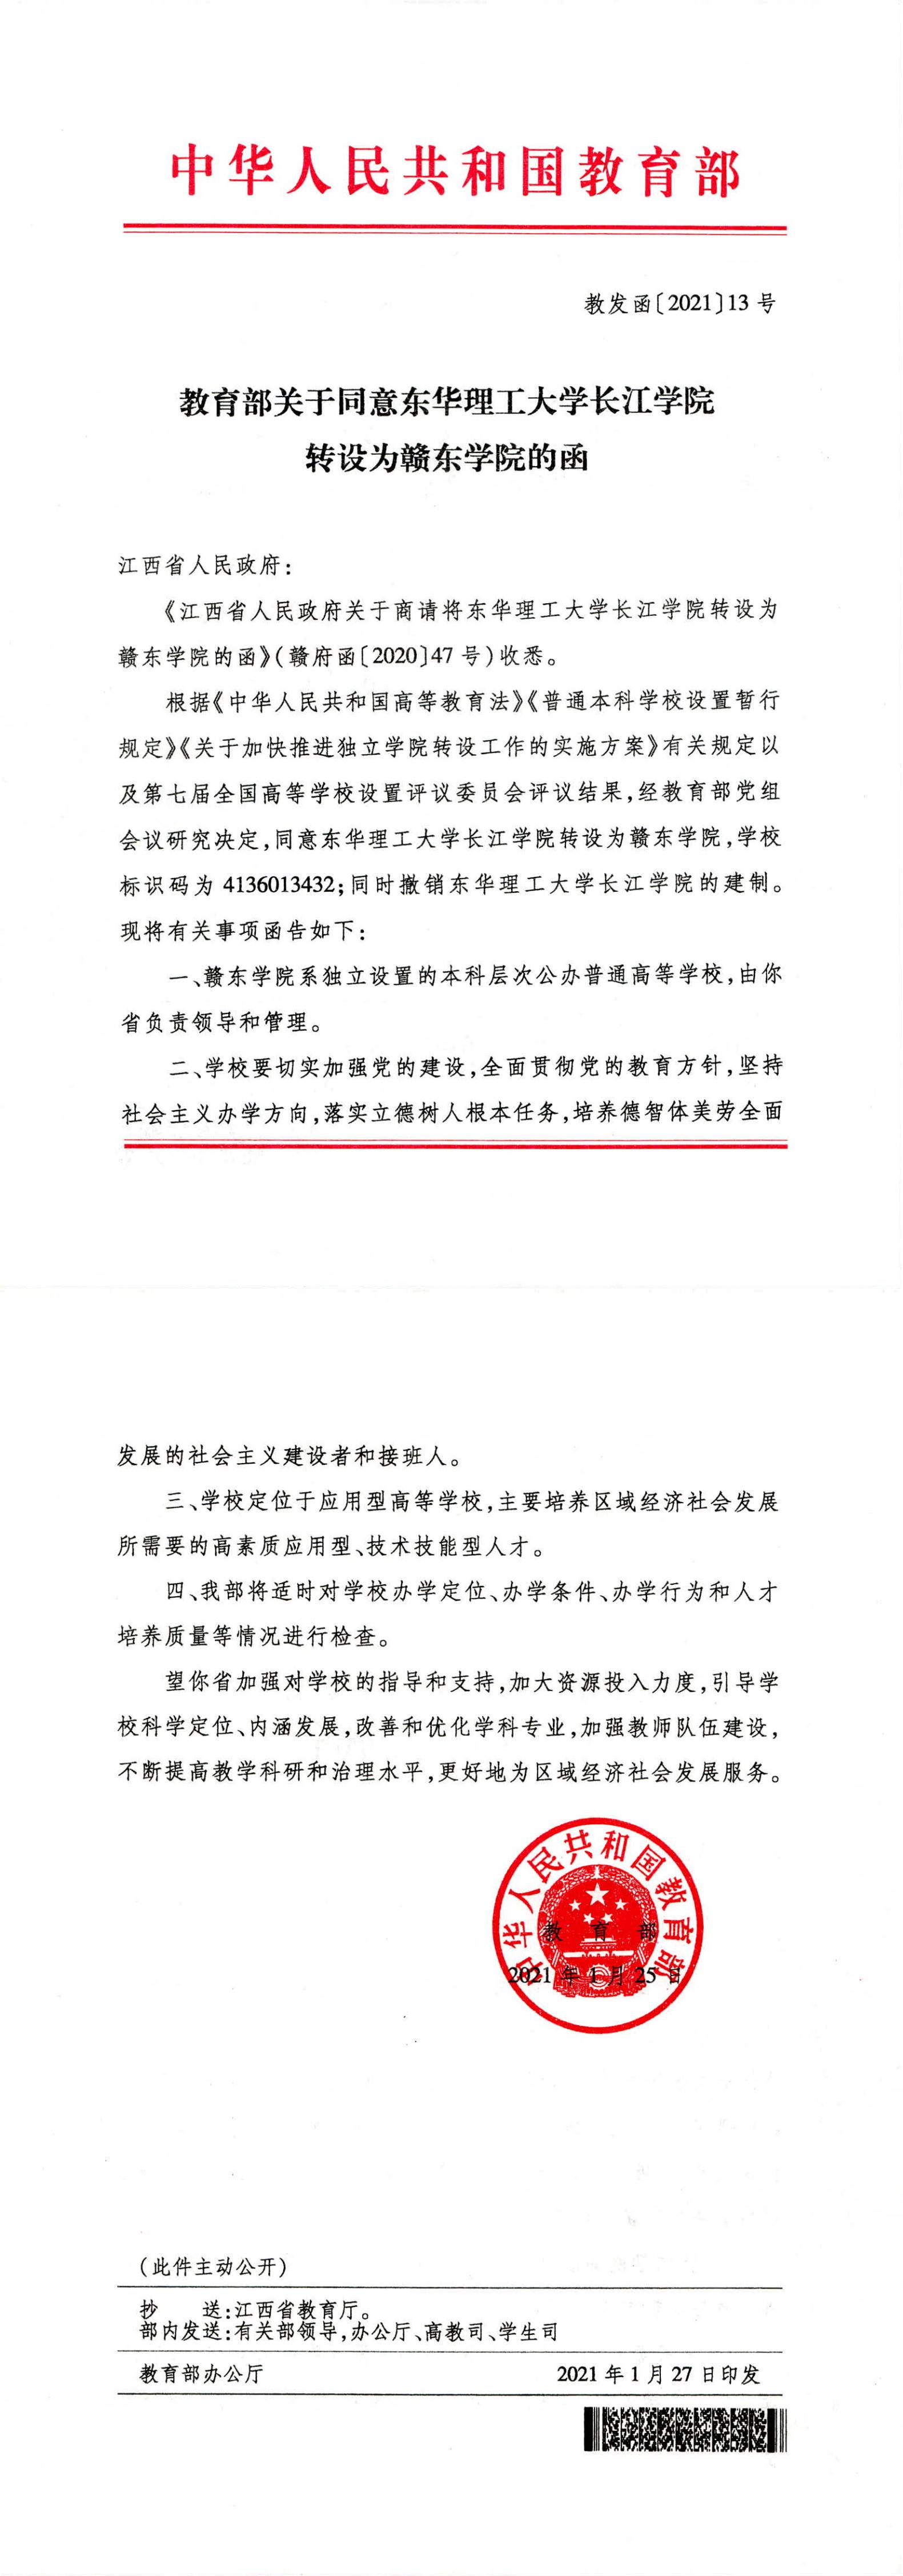 教育部关于同意东华理工大学长江学院转设为赣东学院的函